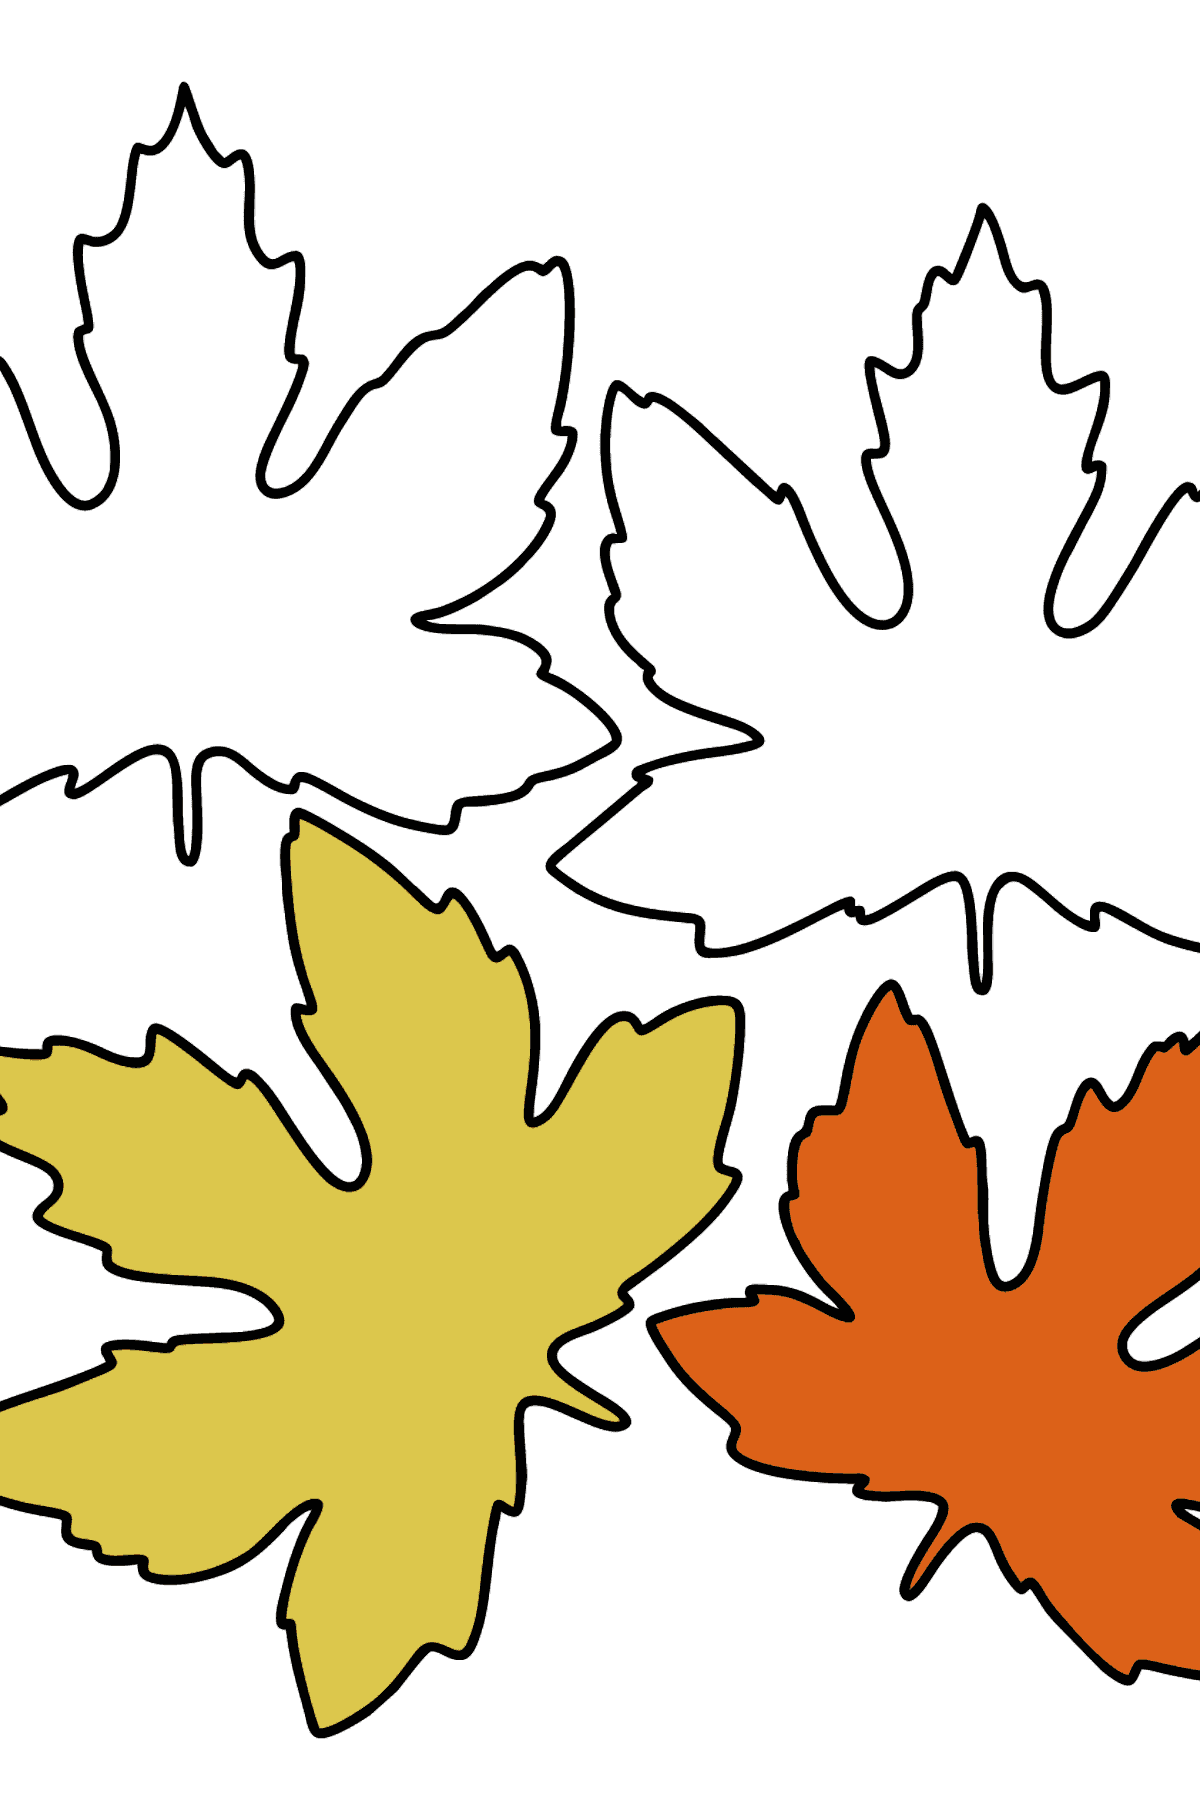 Desenho para colorir de Maple Leaves - Imagens para Colorir para Crianças